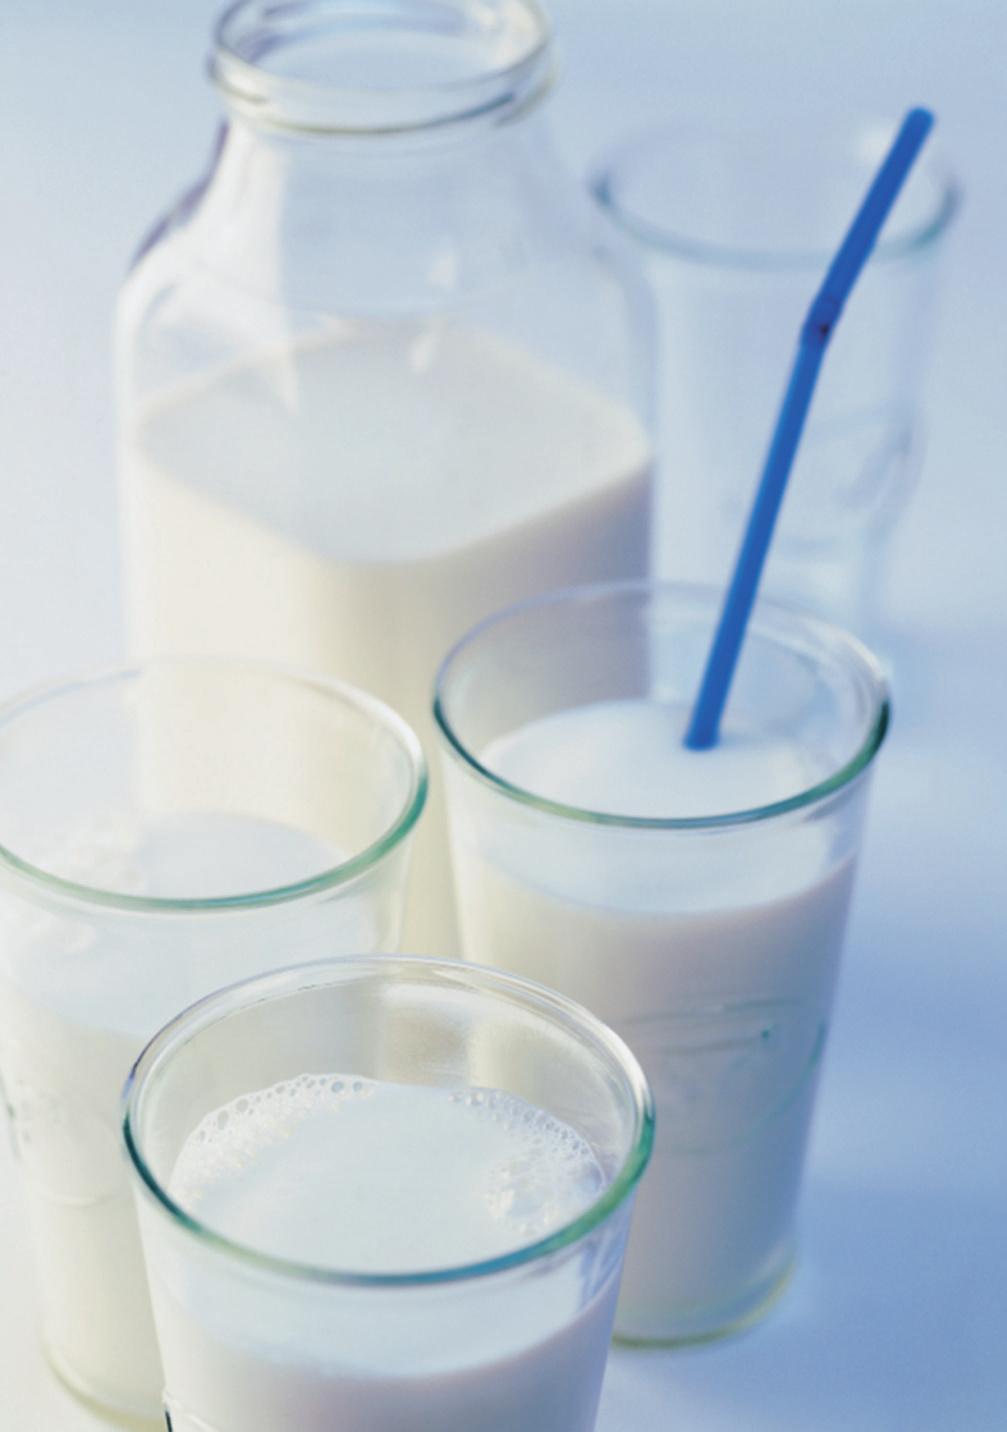 erspektiven besser als momentan spürbar Die ZMP im Überblick Massive Budgetkürzungen abgewendet Milchpro uzenten nehmen Zepter selber in die